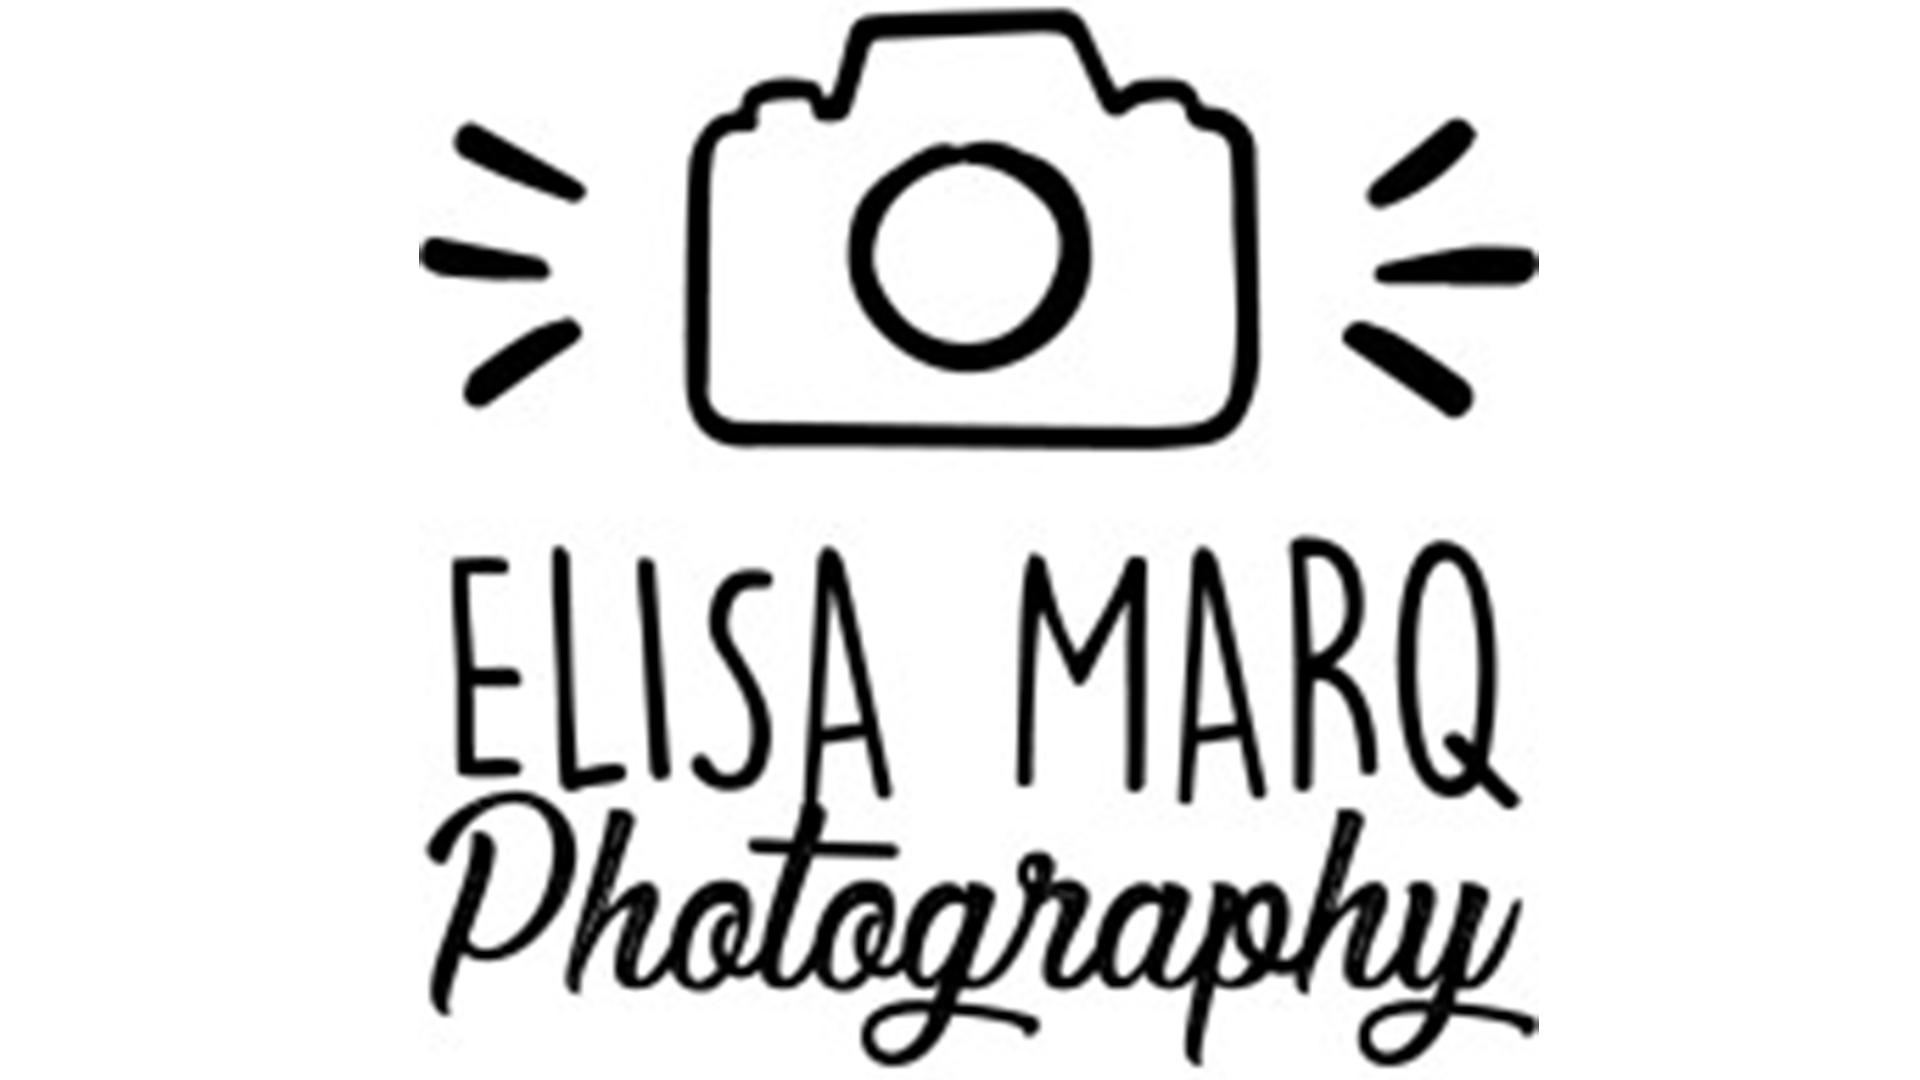 Elisa marq photography